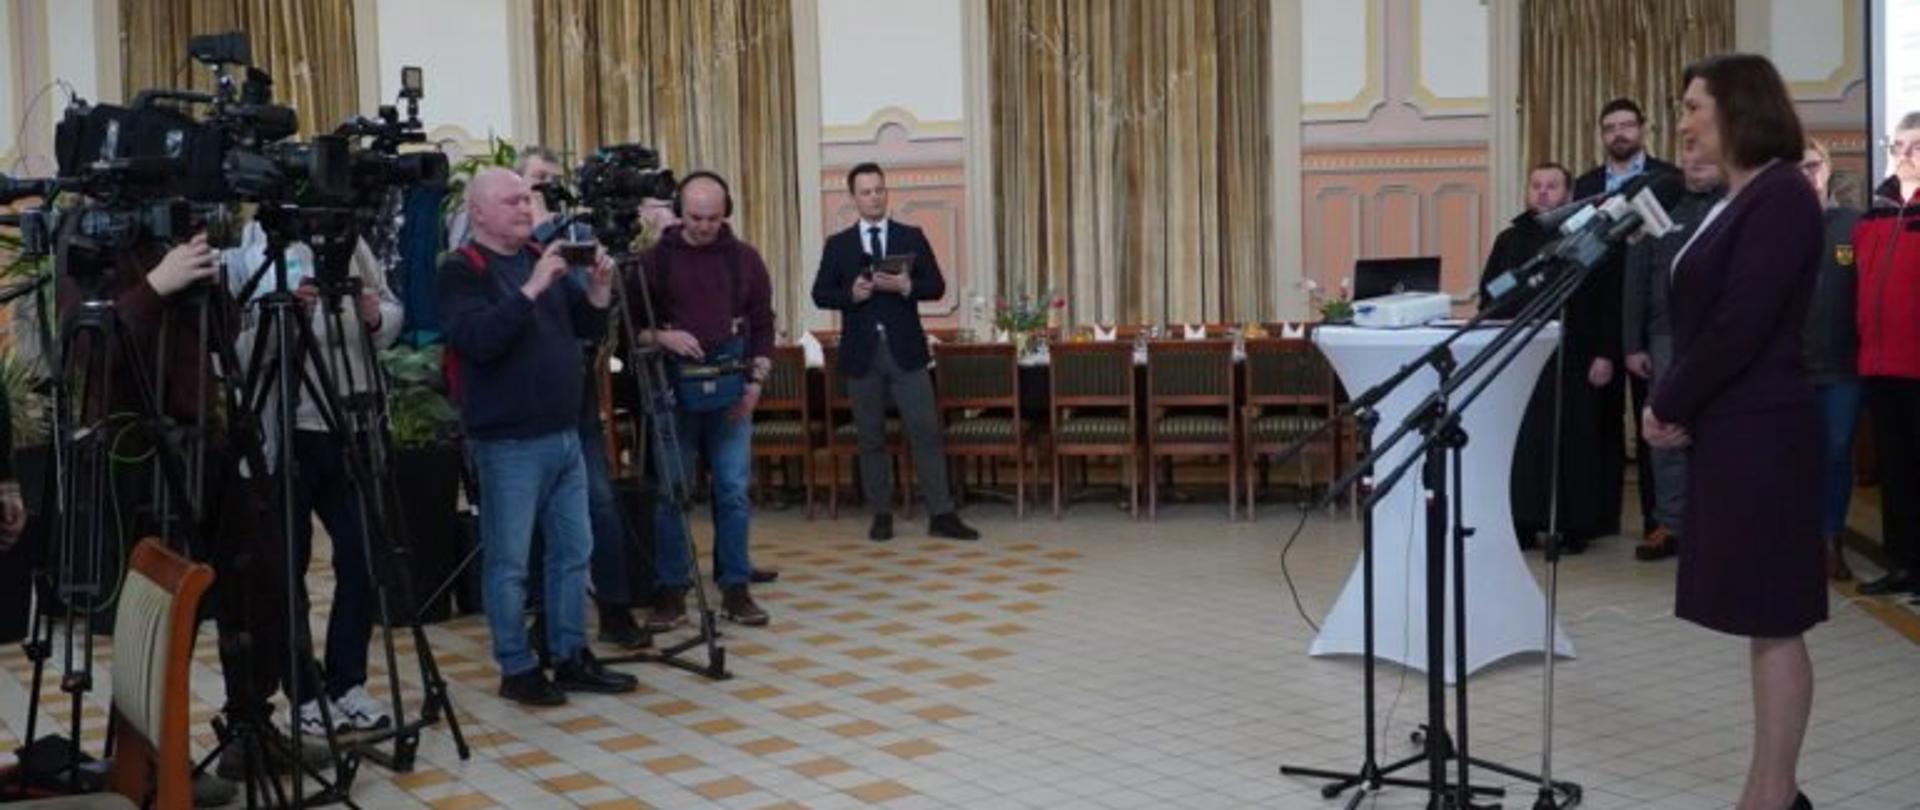 Wojewoda podkarpacki Ewa Leniart zabiera głos podczas konferencji prasowej podsumowującej rok pomocy dla uchodźców z Ukrainy. Przed wojewodą stoją 0przedstawiciele mediów 